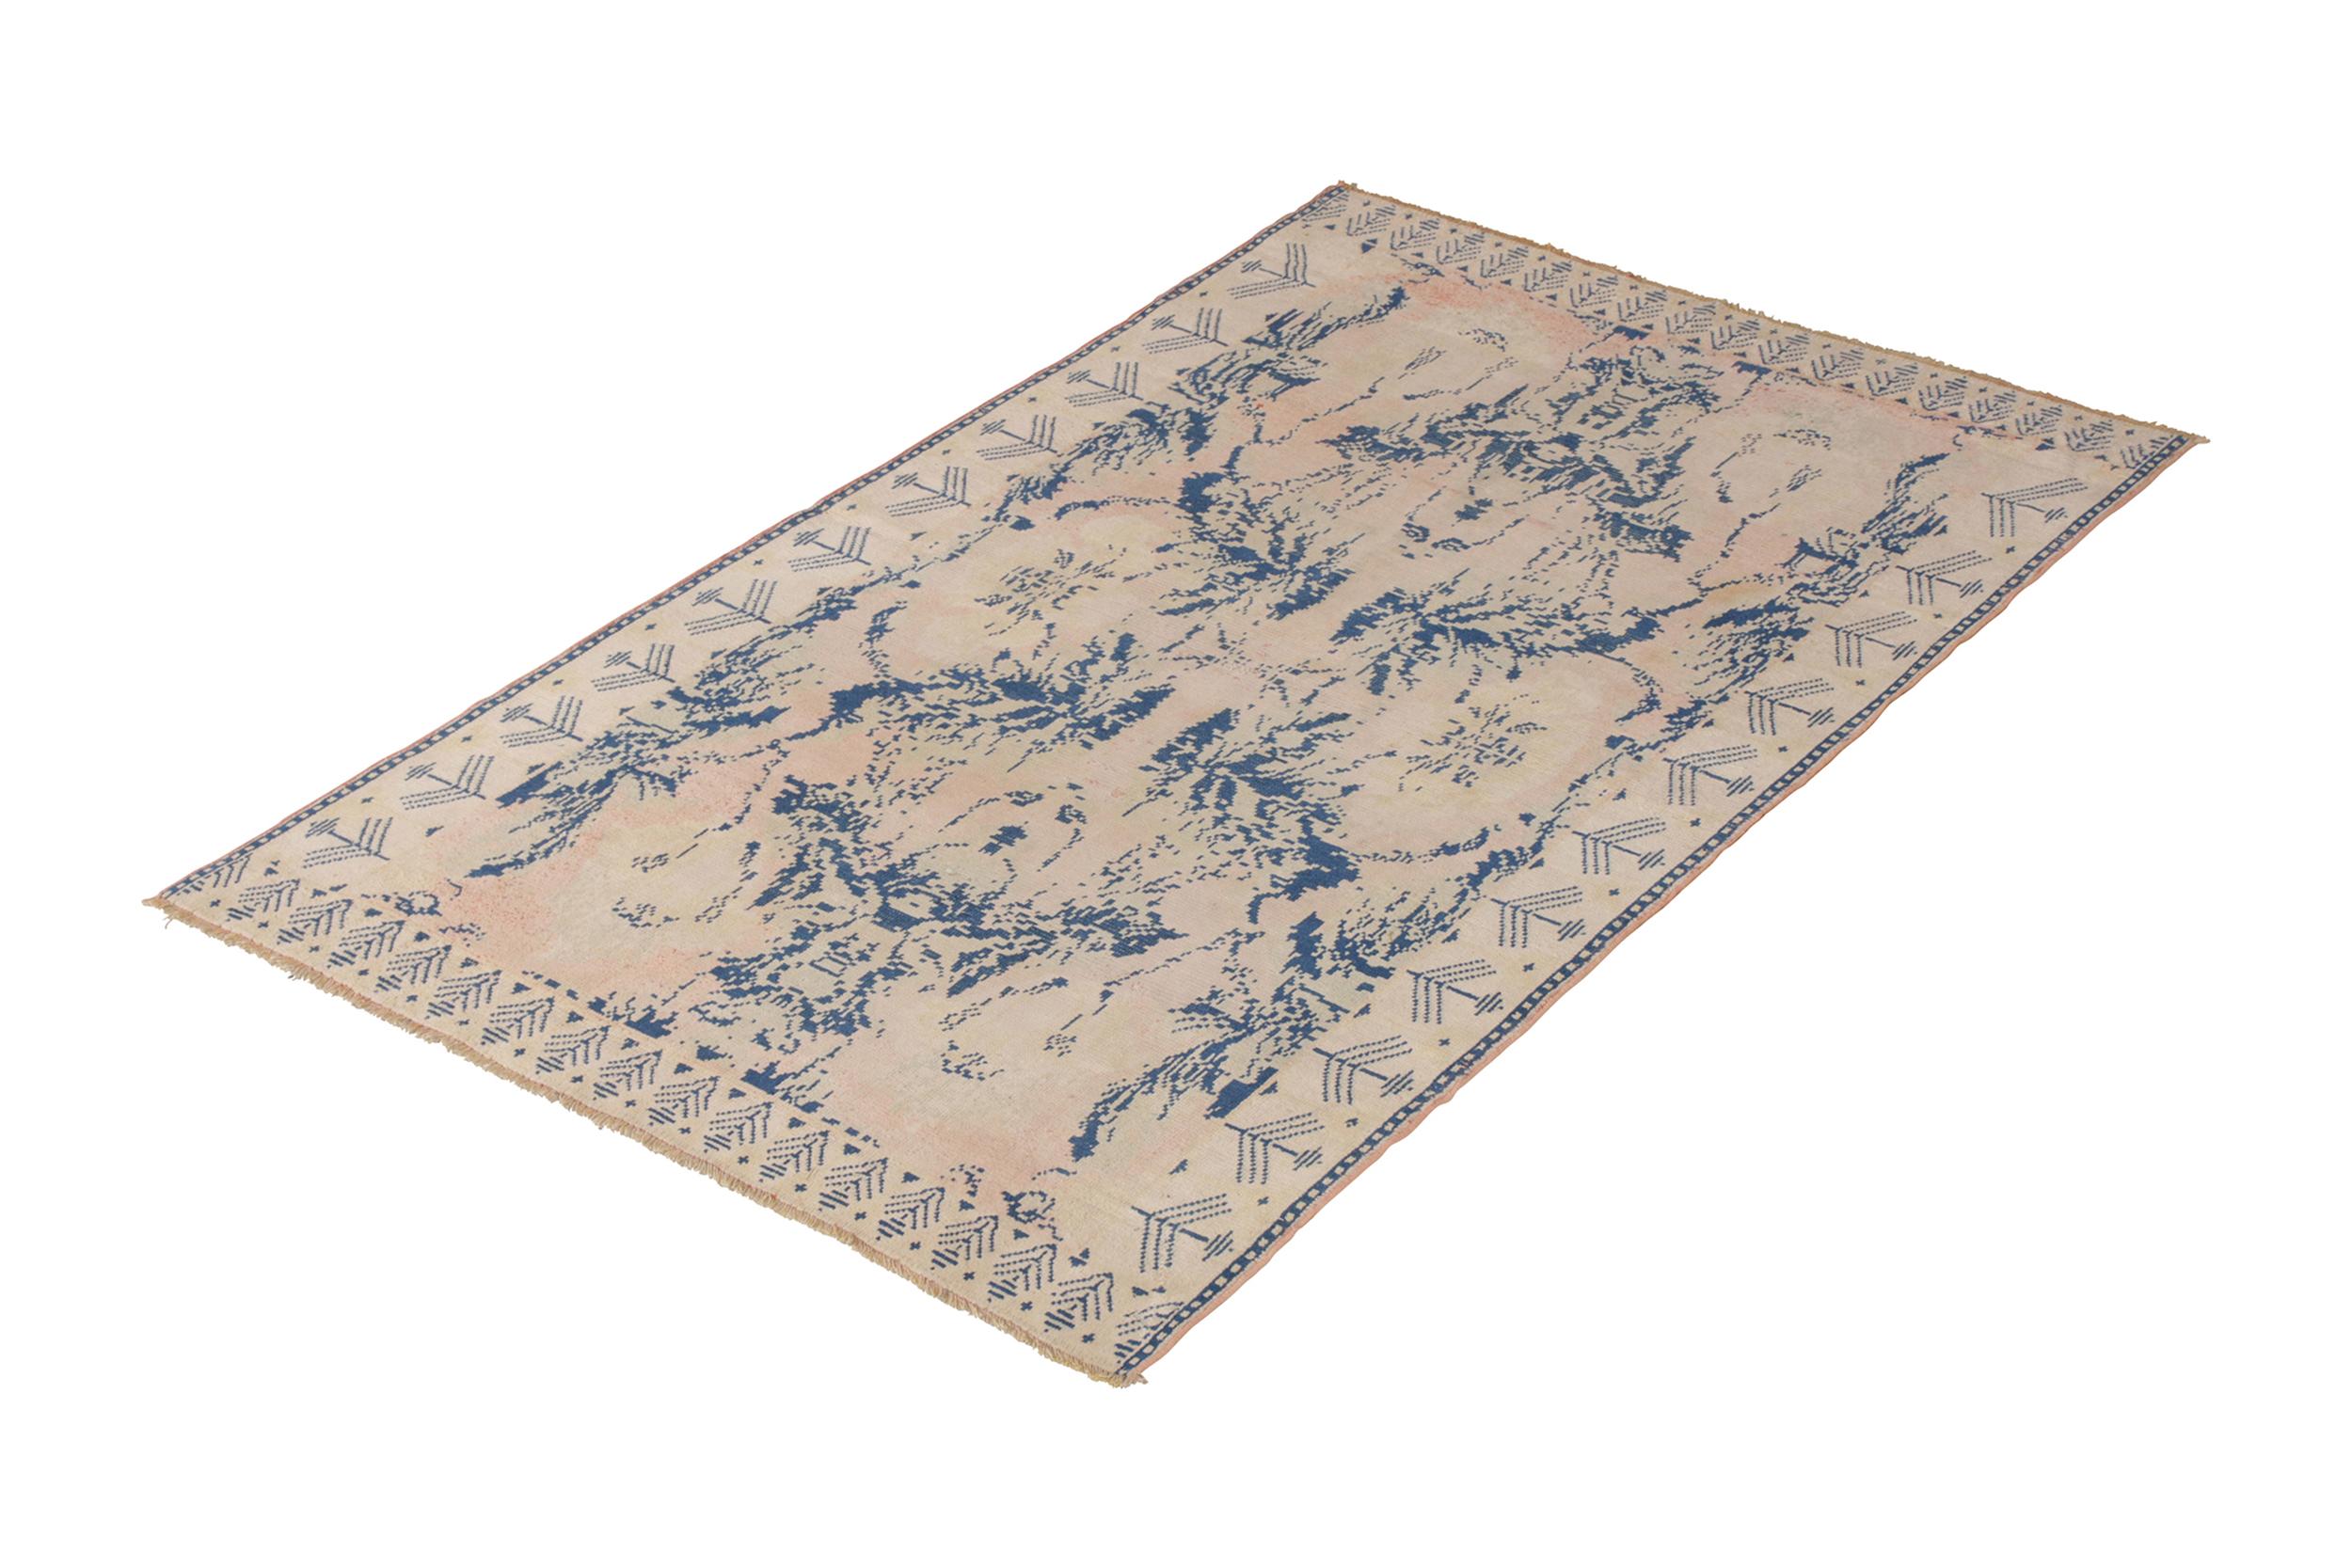 Noué à la main en coton originaire d'Inde vers 1910-1920, ce tapis ancien de 4 x 7 évoque un design Agra dans un motif floral distingué, bénéficiant de couleurs bleues et crème en bon état.